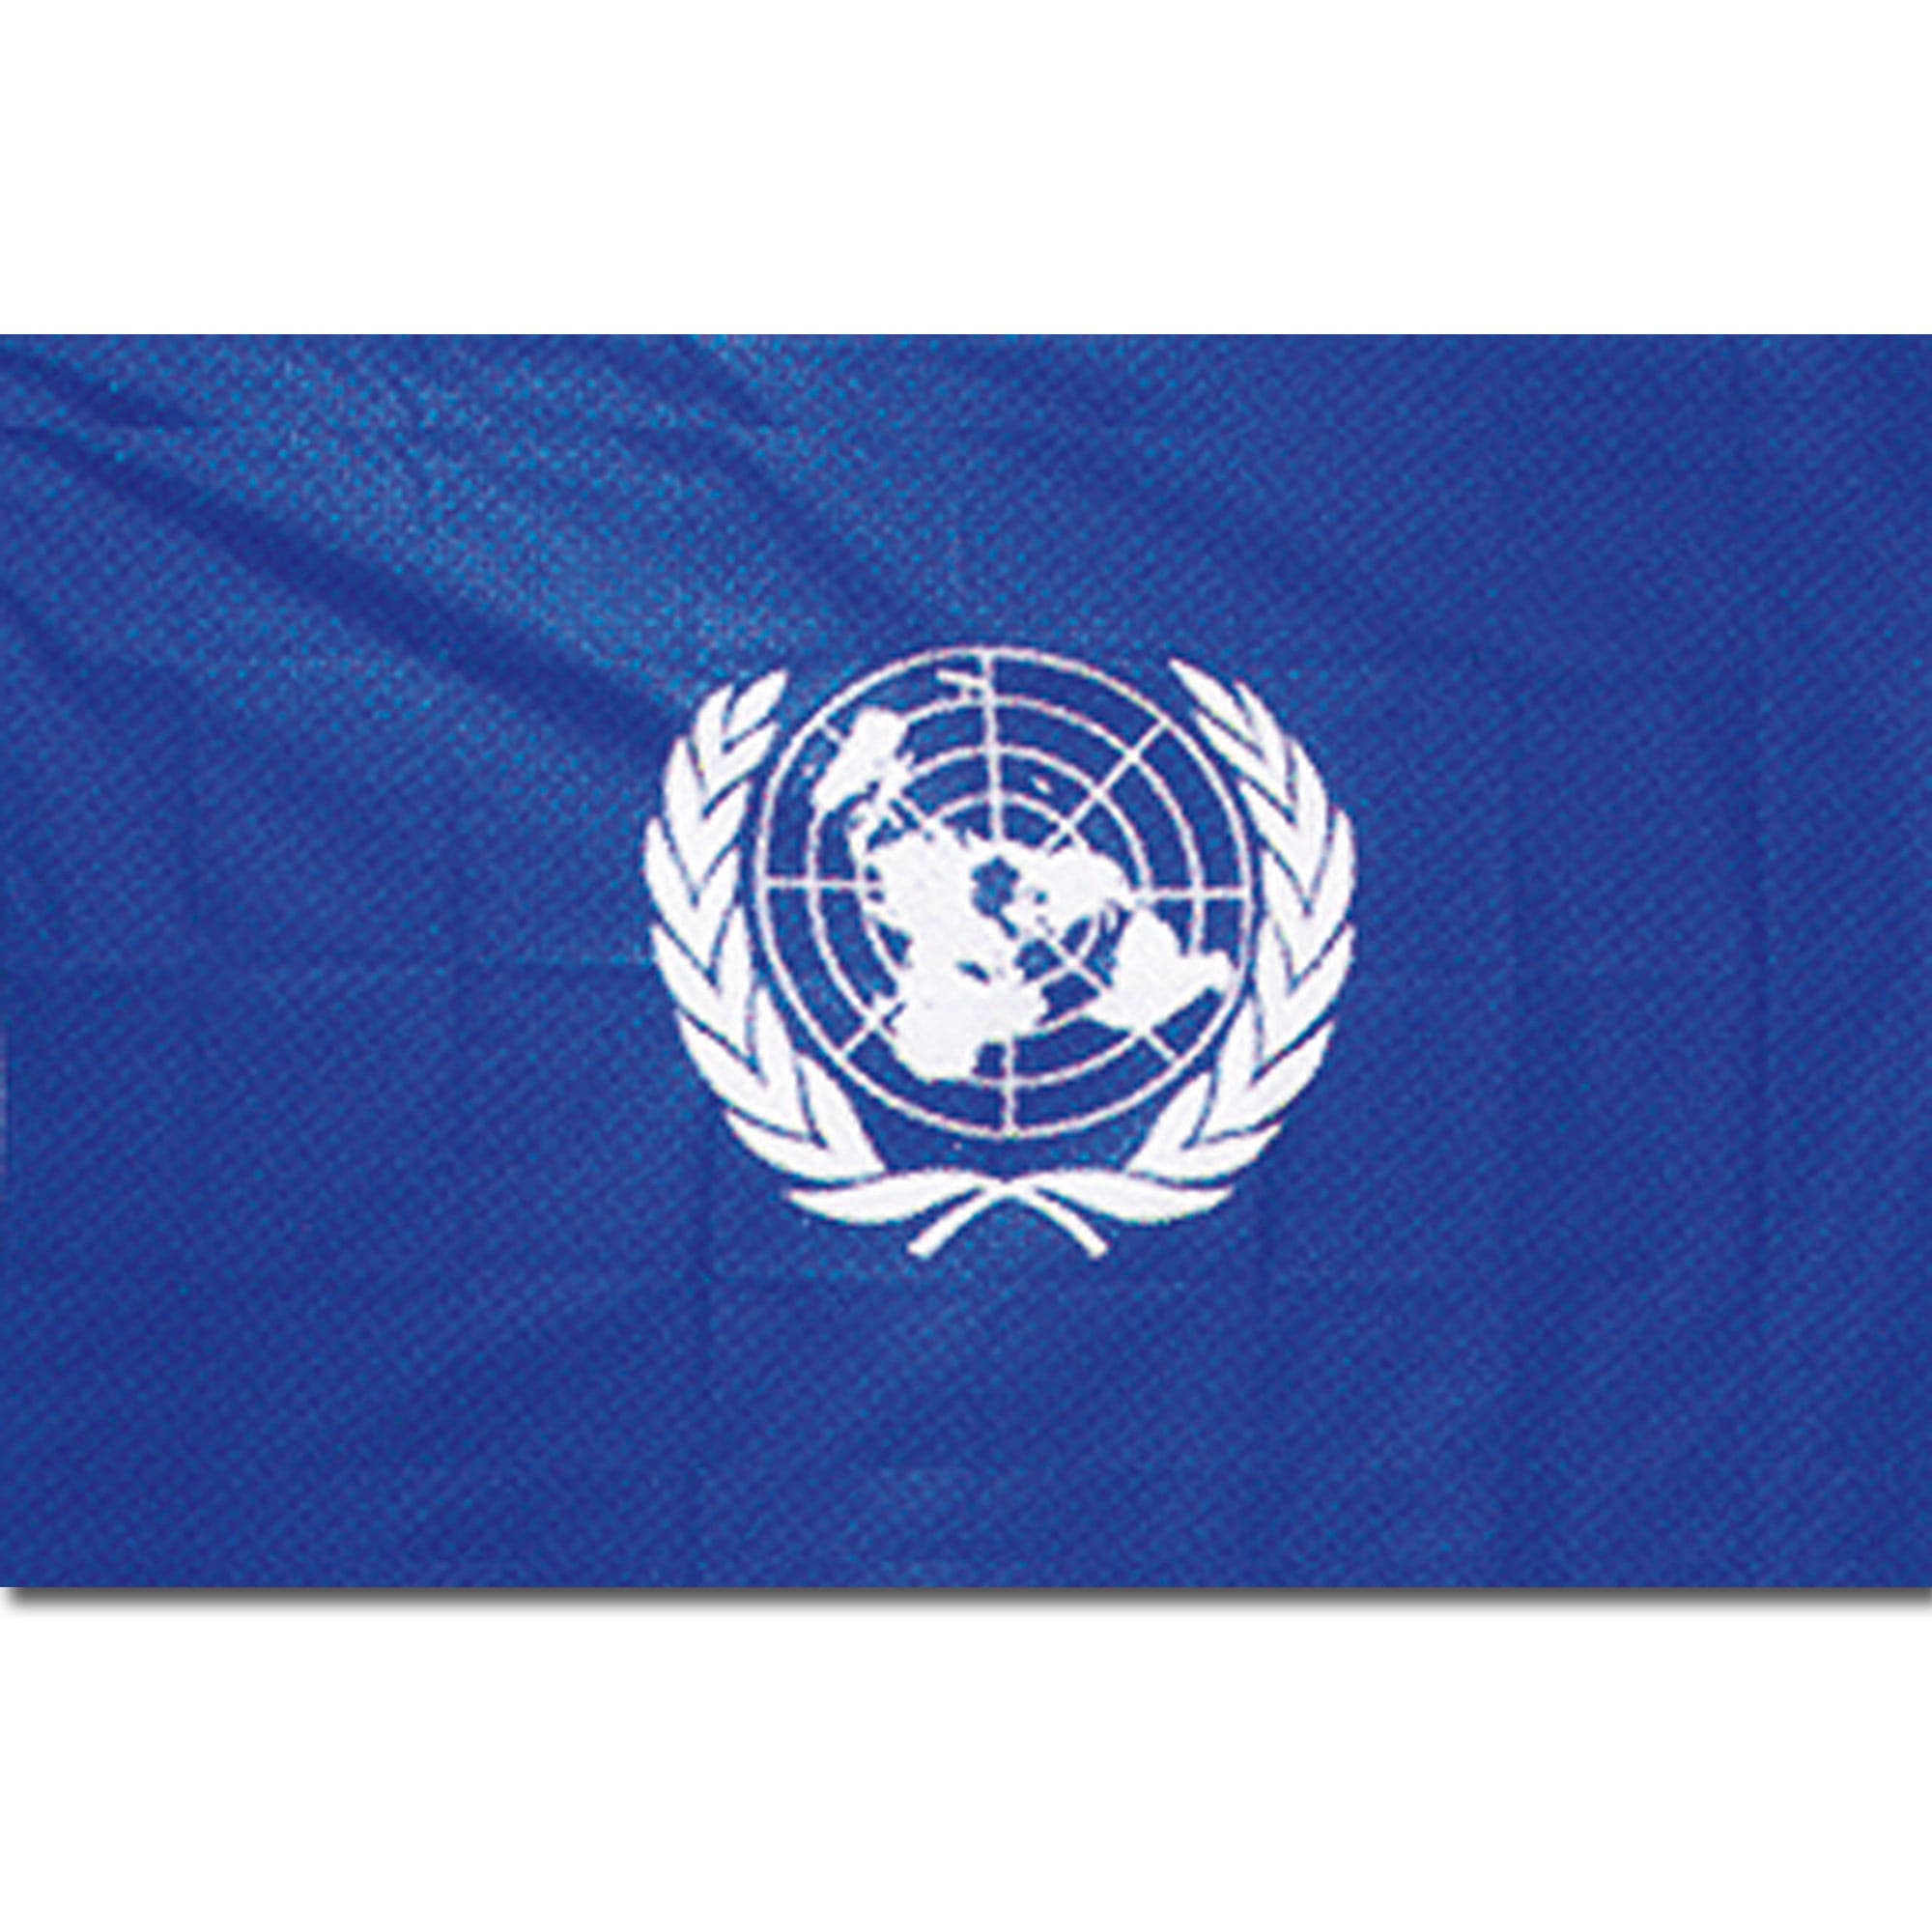 Цвета оон. Флаг ООН. Альтернативный флаг ООН. Выдуманный флаг ООН. Флаг похожий на флаг ООН.